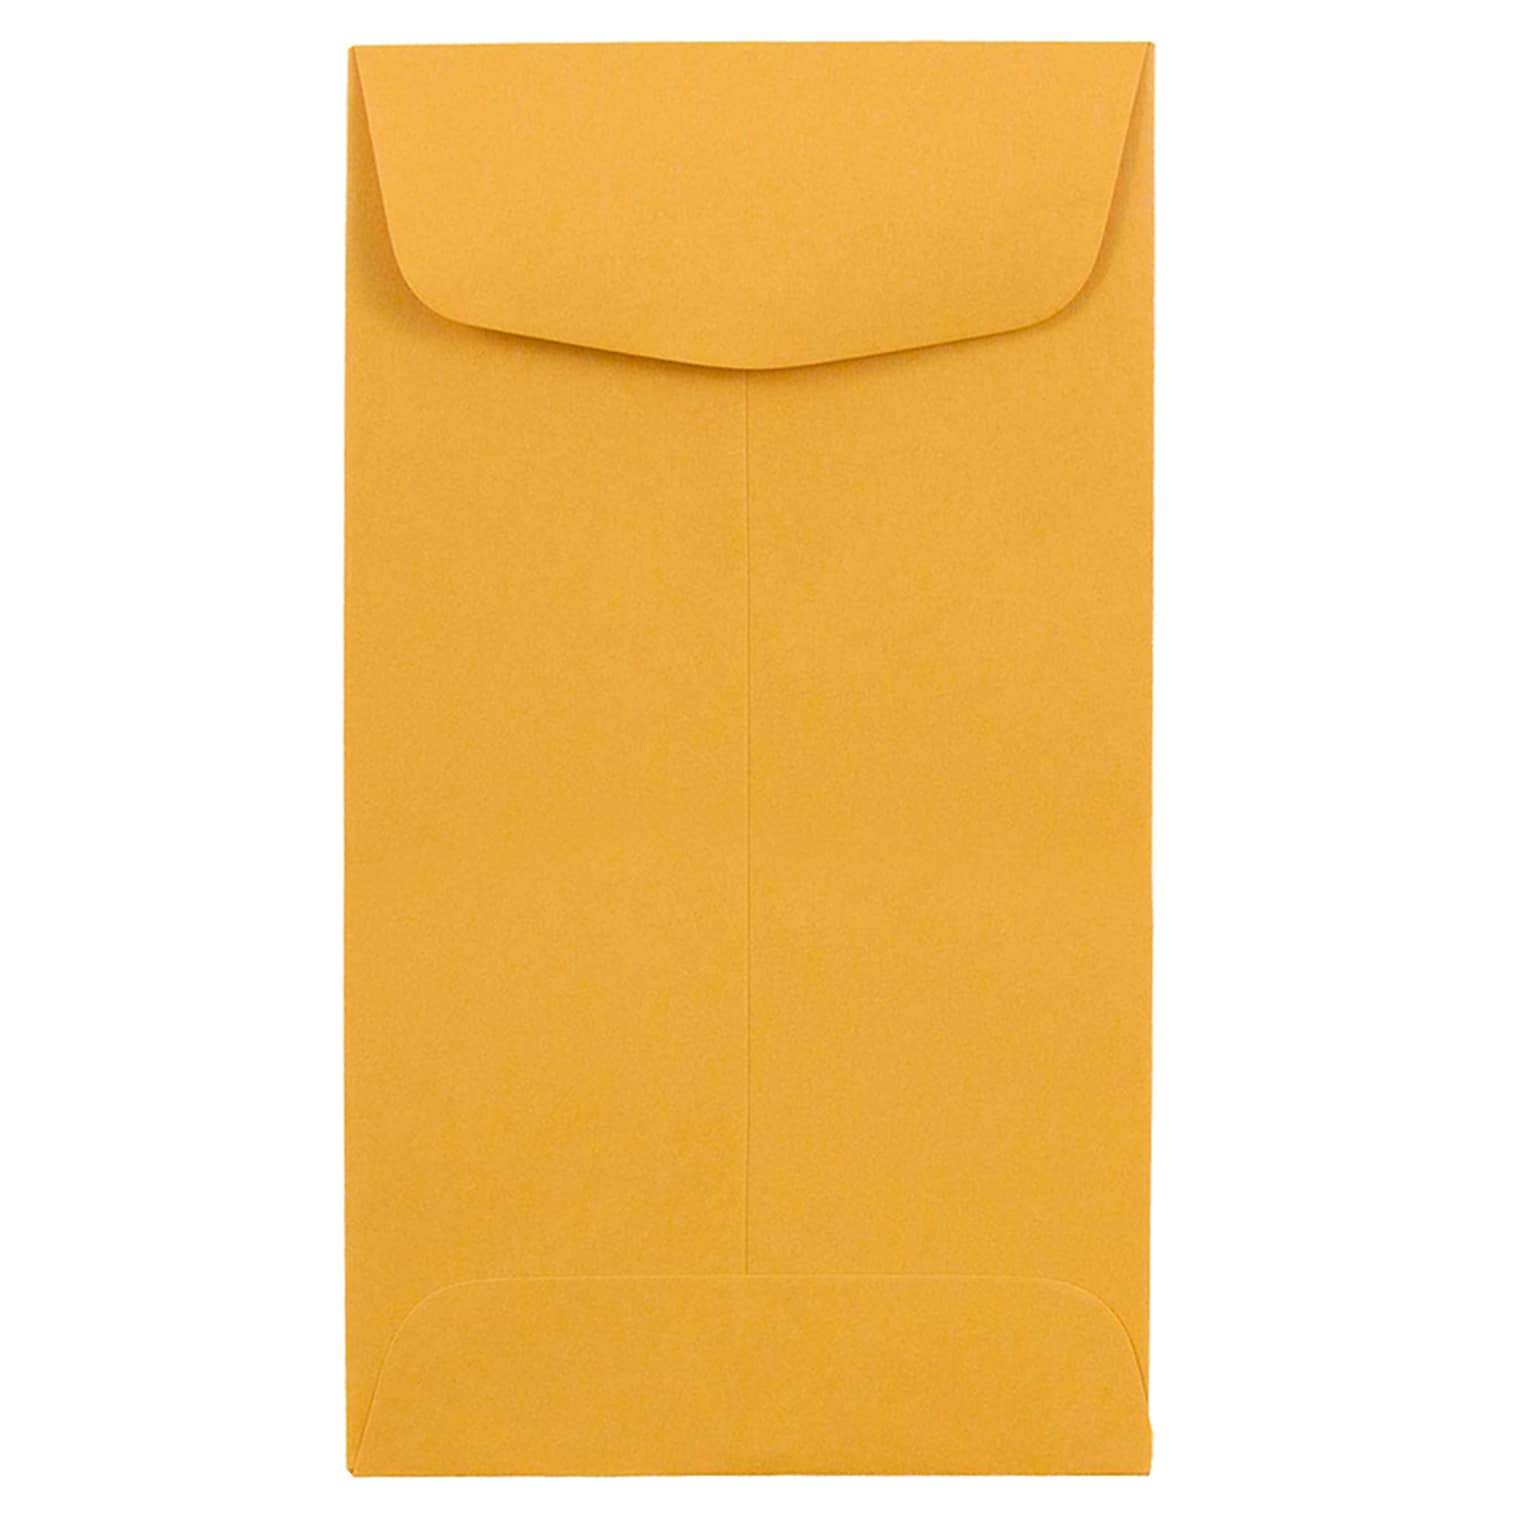 JAM Paper #6 Coin Envelope, 3 3/8 x 6, Brown Kraft, 1000/Carton (01623992B)